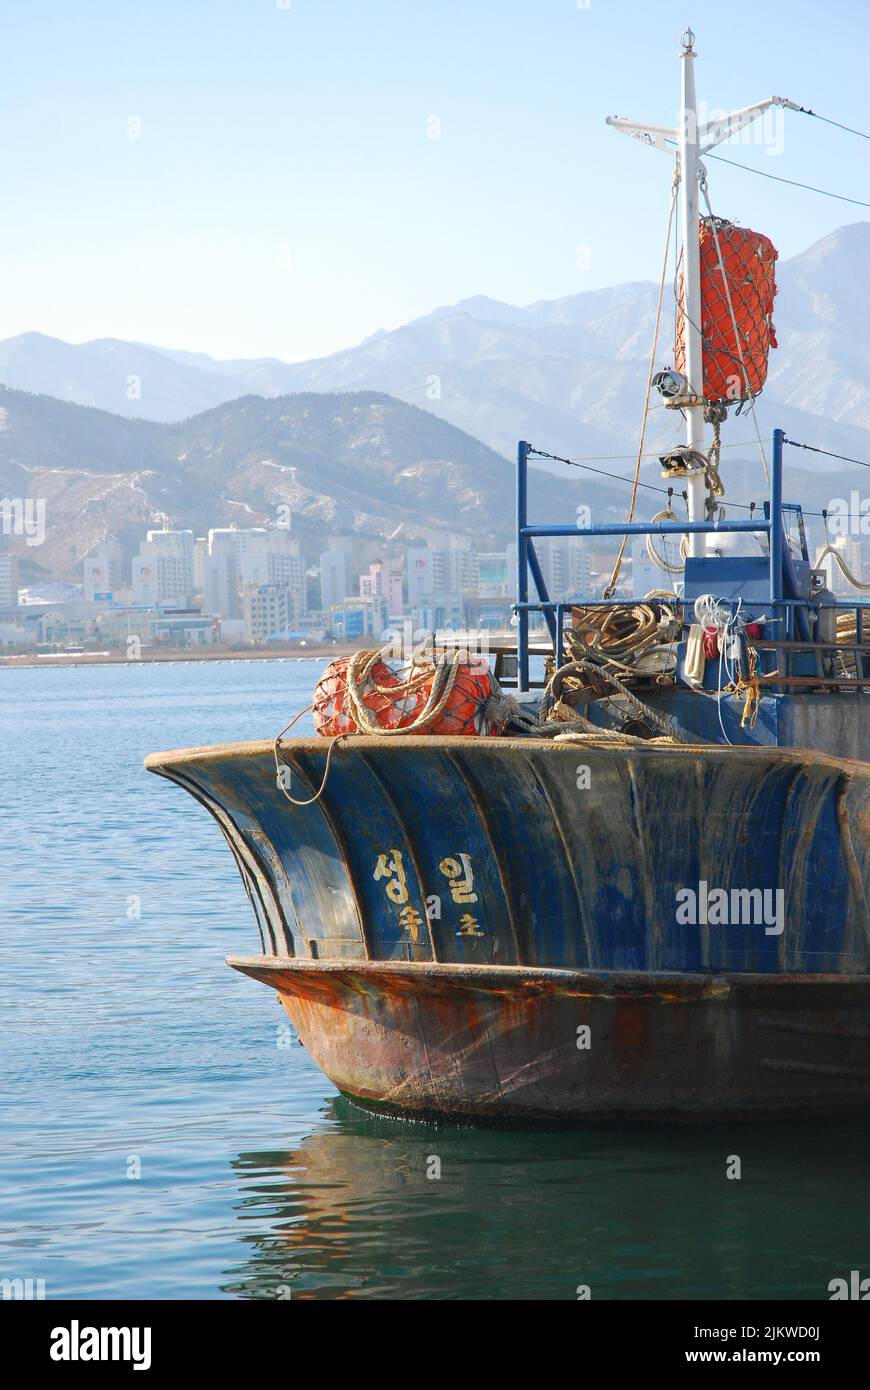 Bateau de pêche coréen ancré dans le port, Corée du Sud Banque D'Images